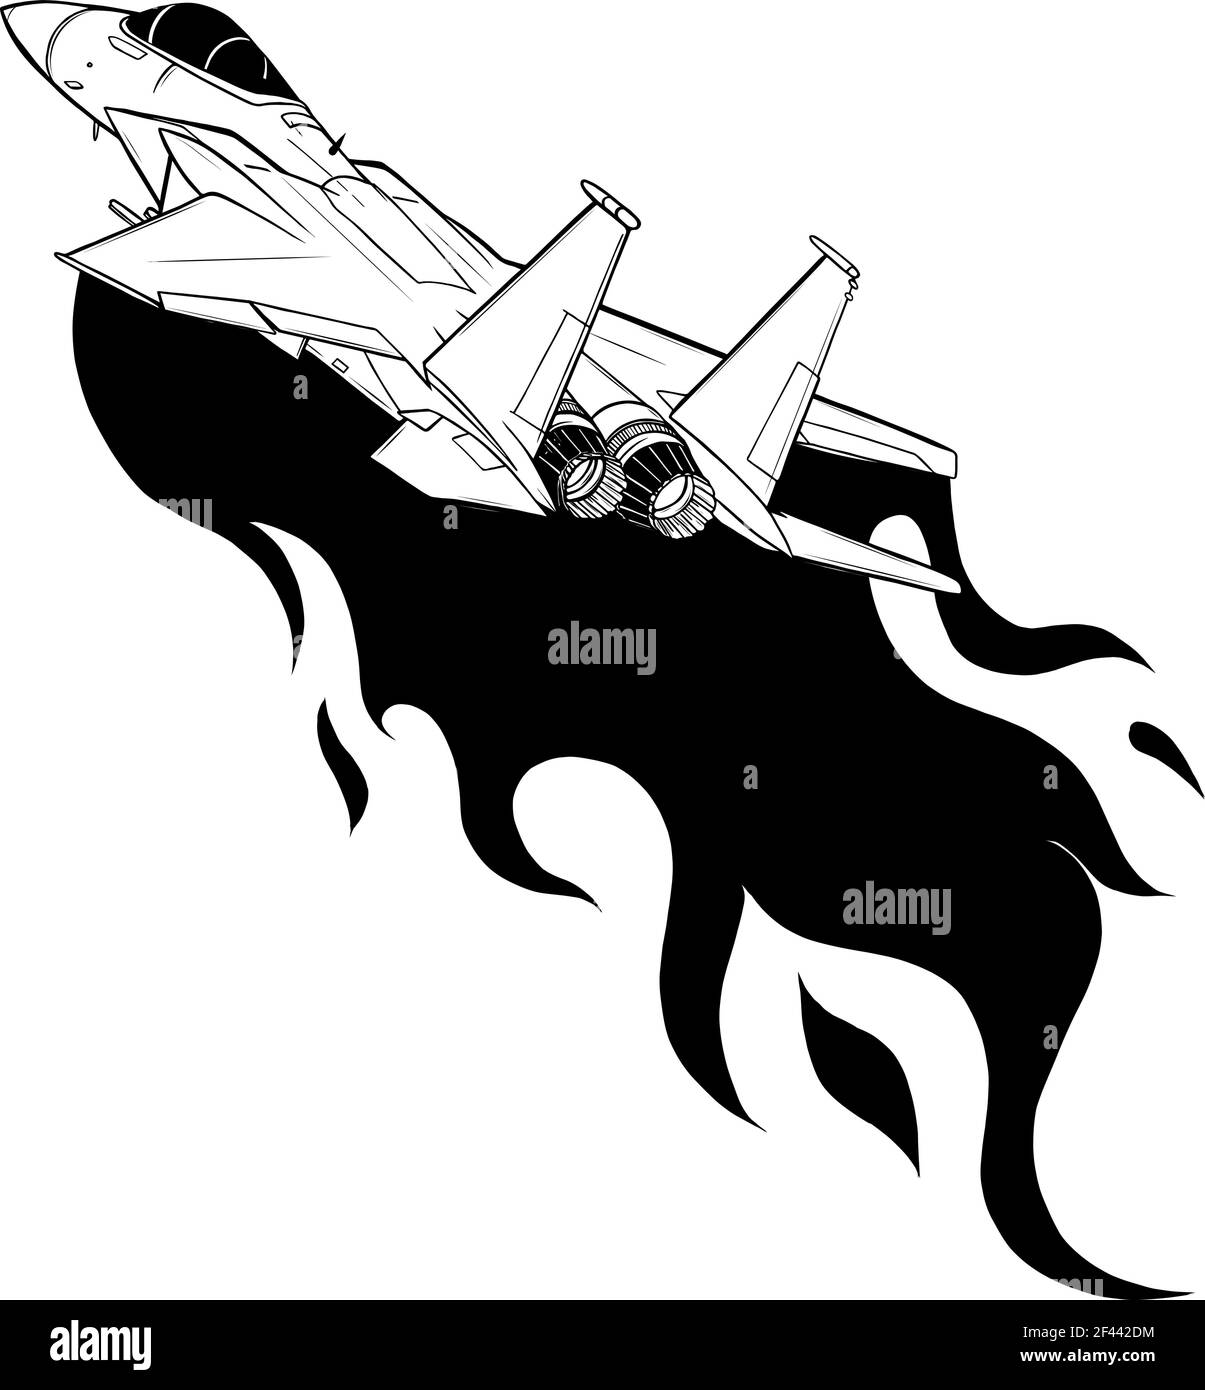 Dessinez en noir et blanc des avions de chasse militaires isolés en arrière-plan. Illustration vectorielle Illustration de Vecteur